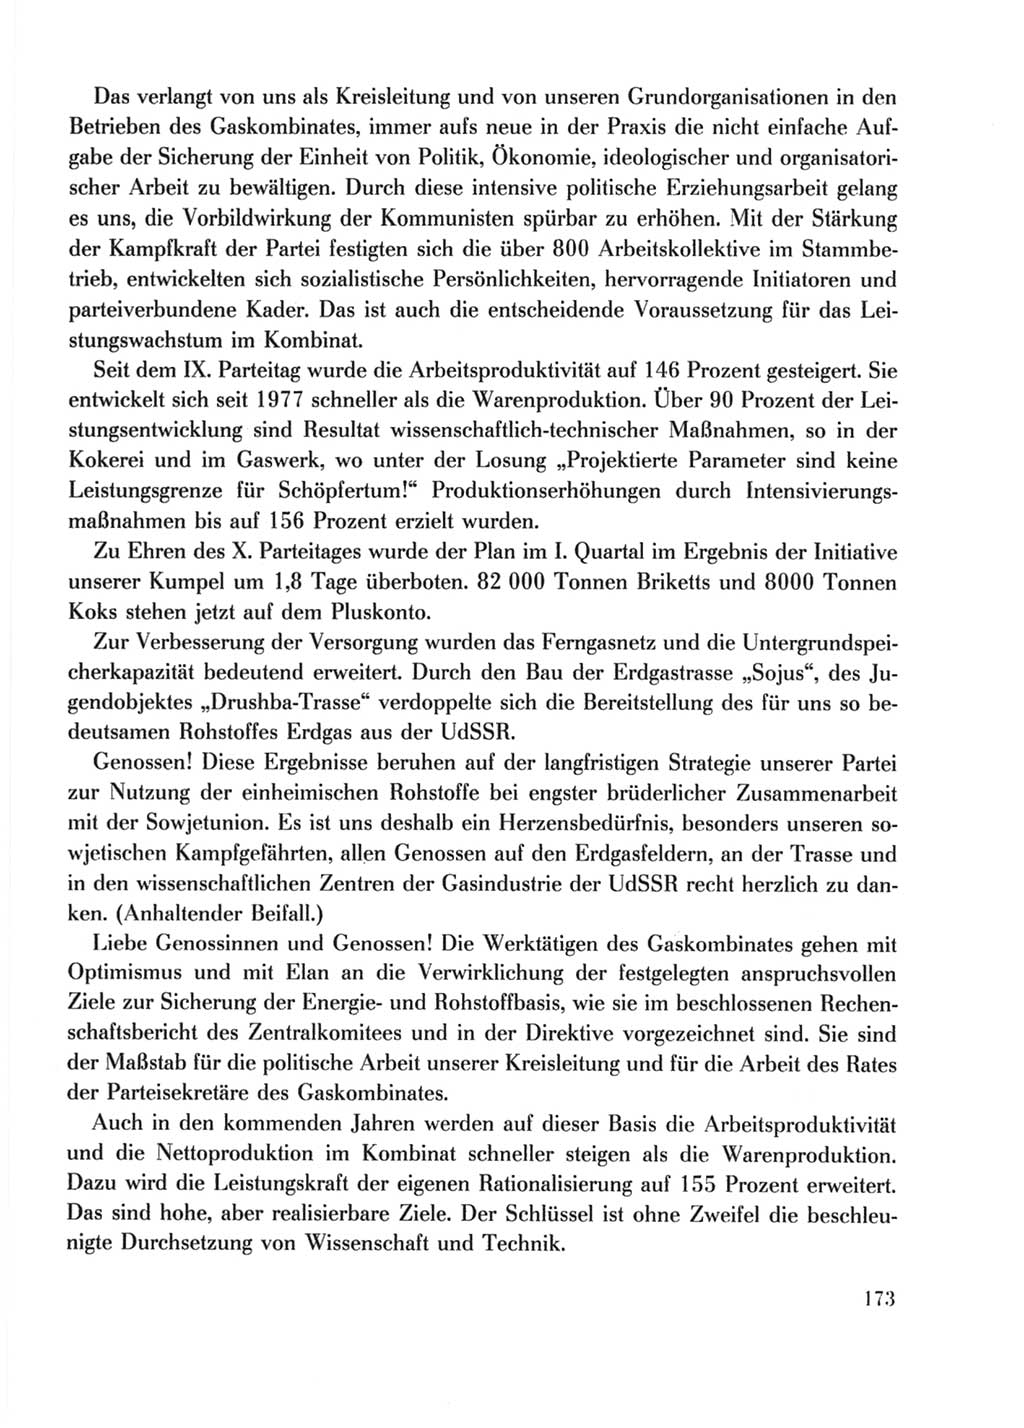 Protokoll der Verhandlungen des Ⅹ. Parteitages der Sozialistischen Einheitspartei Deutschlands (SED) [Deutsche Demokratische Republik (DDR)] 1981, Band 2, Seite 173 (Prot. Verh. Ⅹ. PT SED DDR 1981, Bd. 2, S. 173)